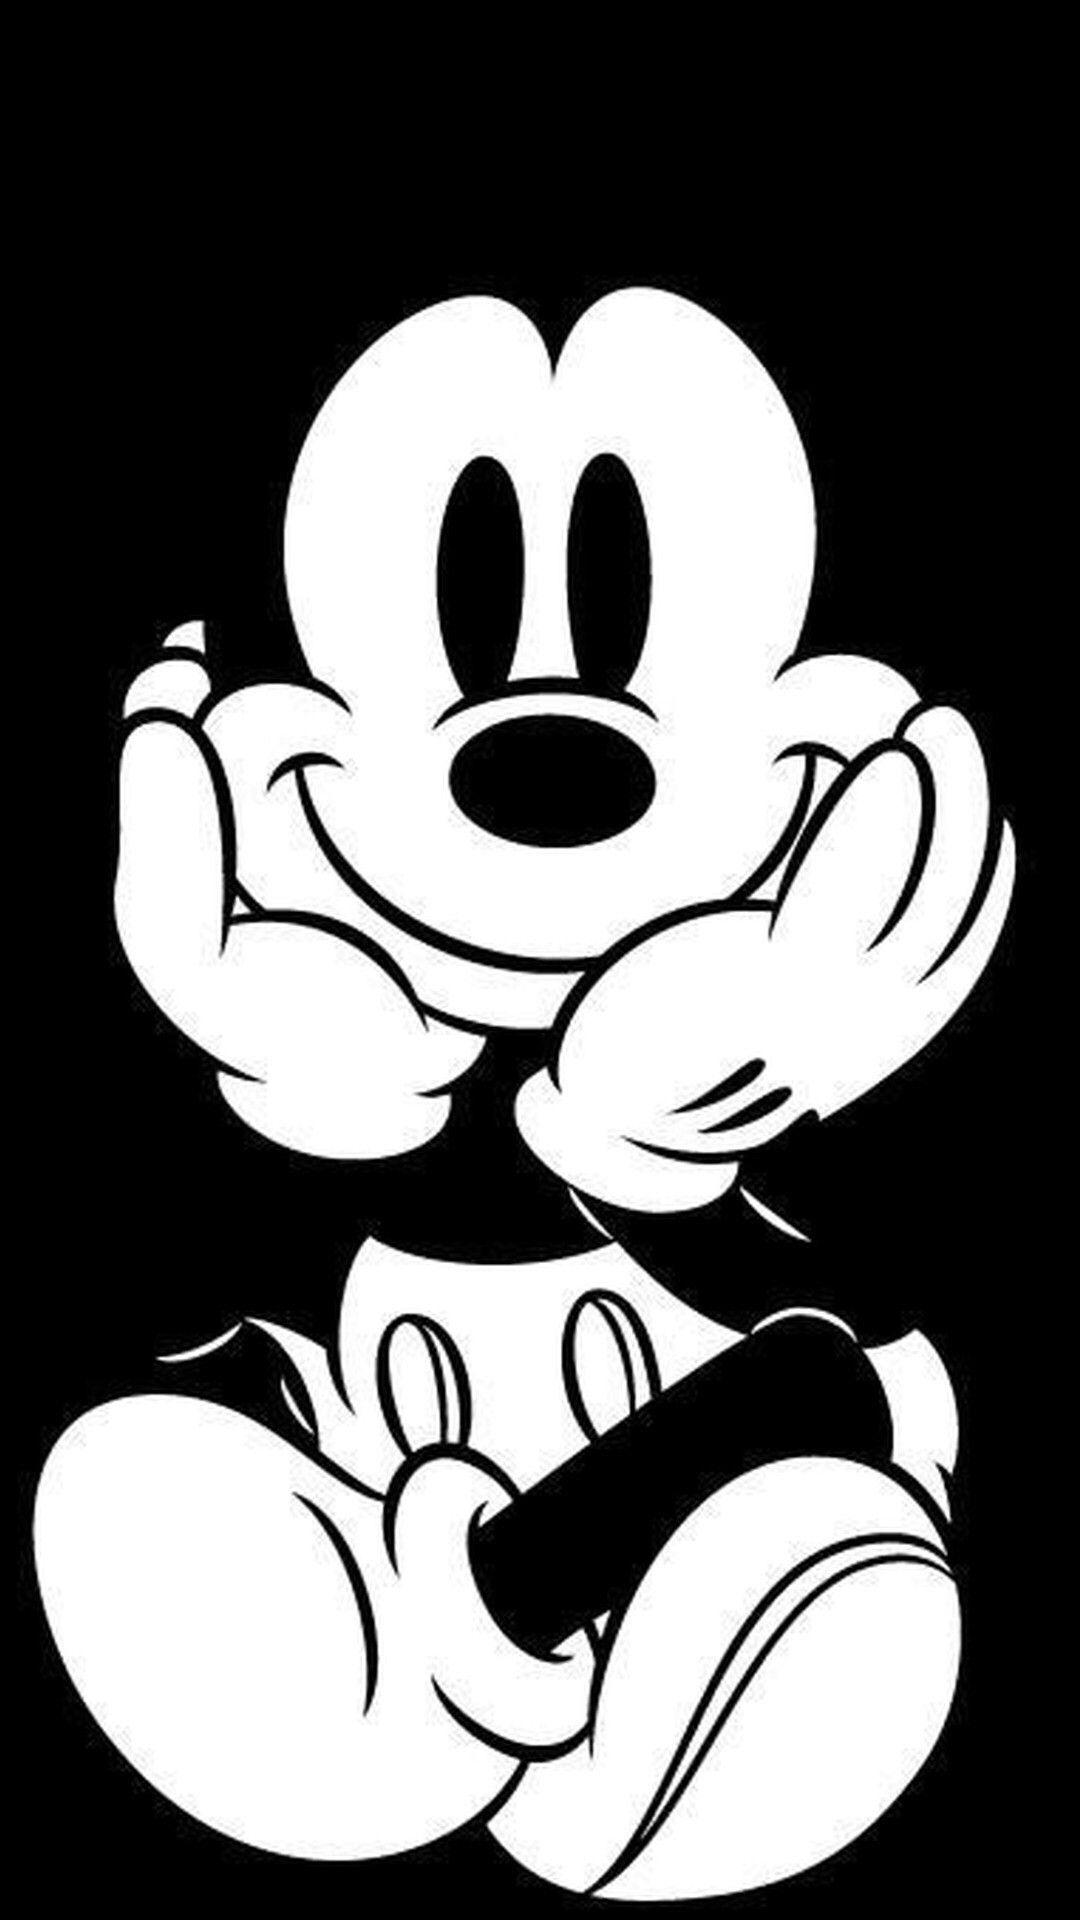 1080x1920 Hình Nền Màn Hình Chính iPhone Mickey And Minnie